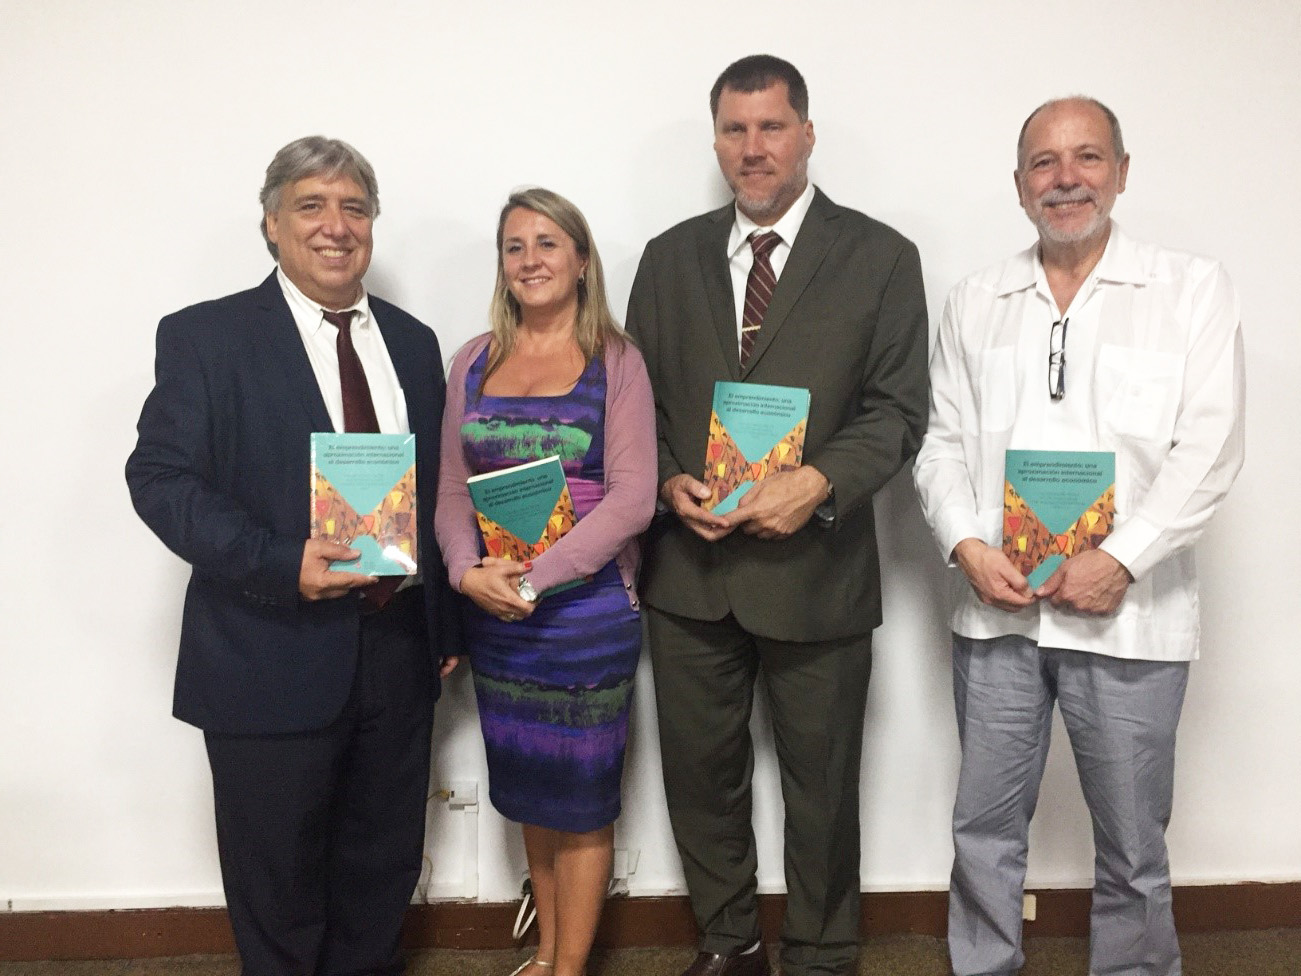 Presentado en La Habana un libro sobre emprendimiento coeditado por dos profesores de la UC